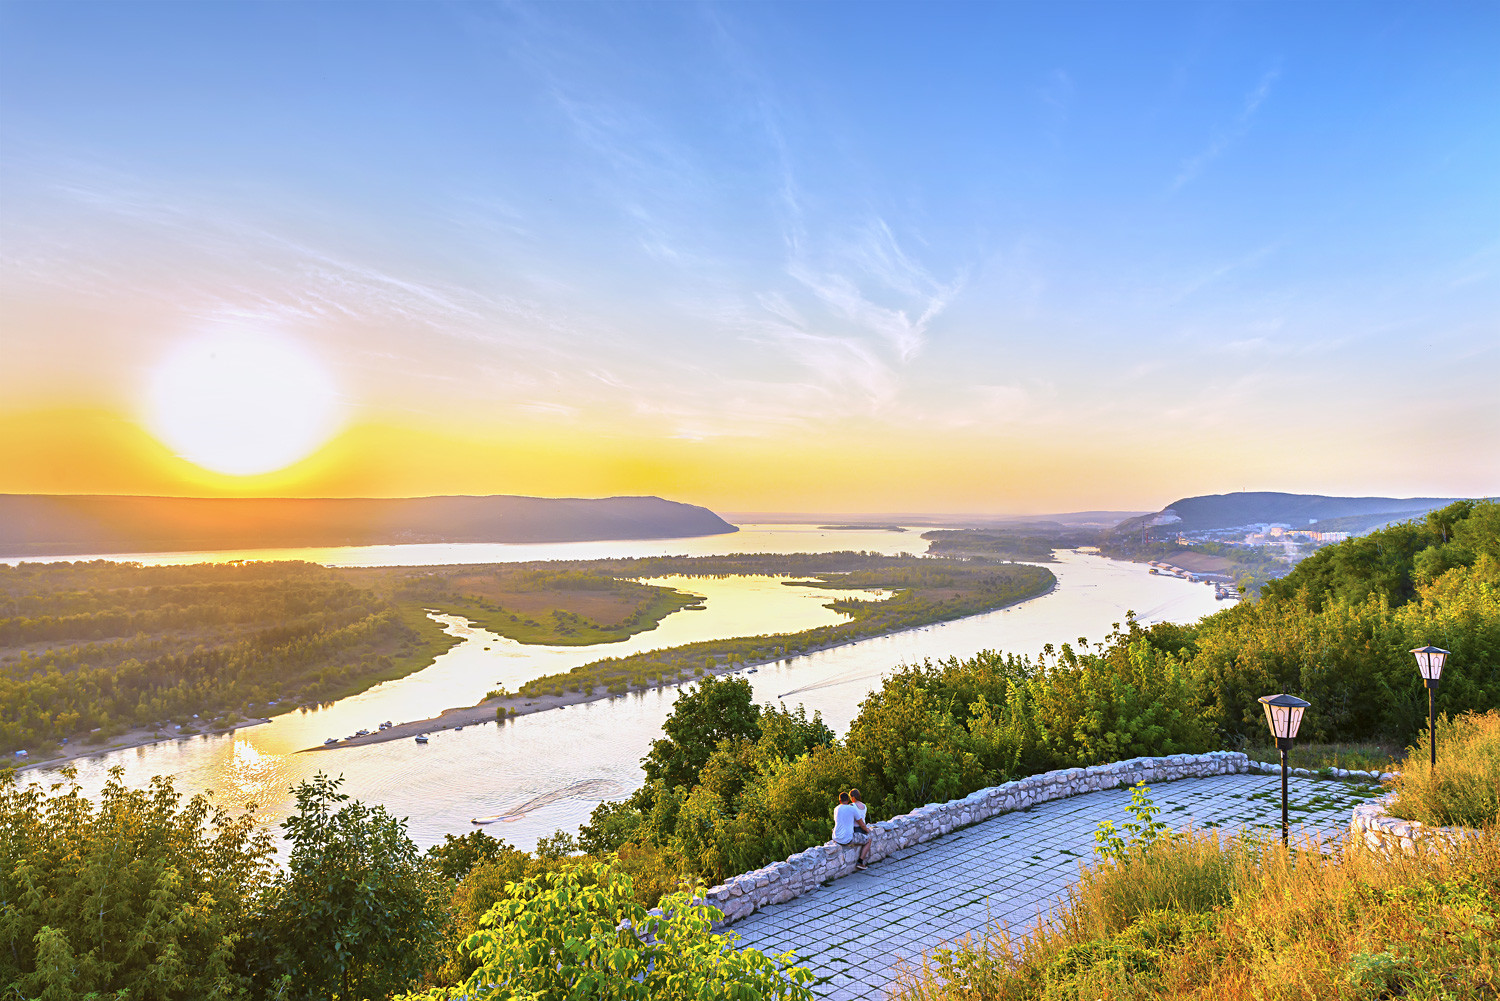 Zalazak sunca u turističkom dijelu Volge na području Samare. Živopisna priroda Središnje Rusije u ljetnom razdoblju.